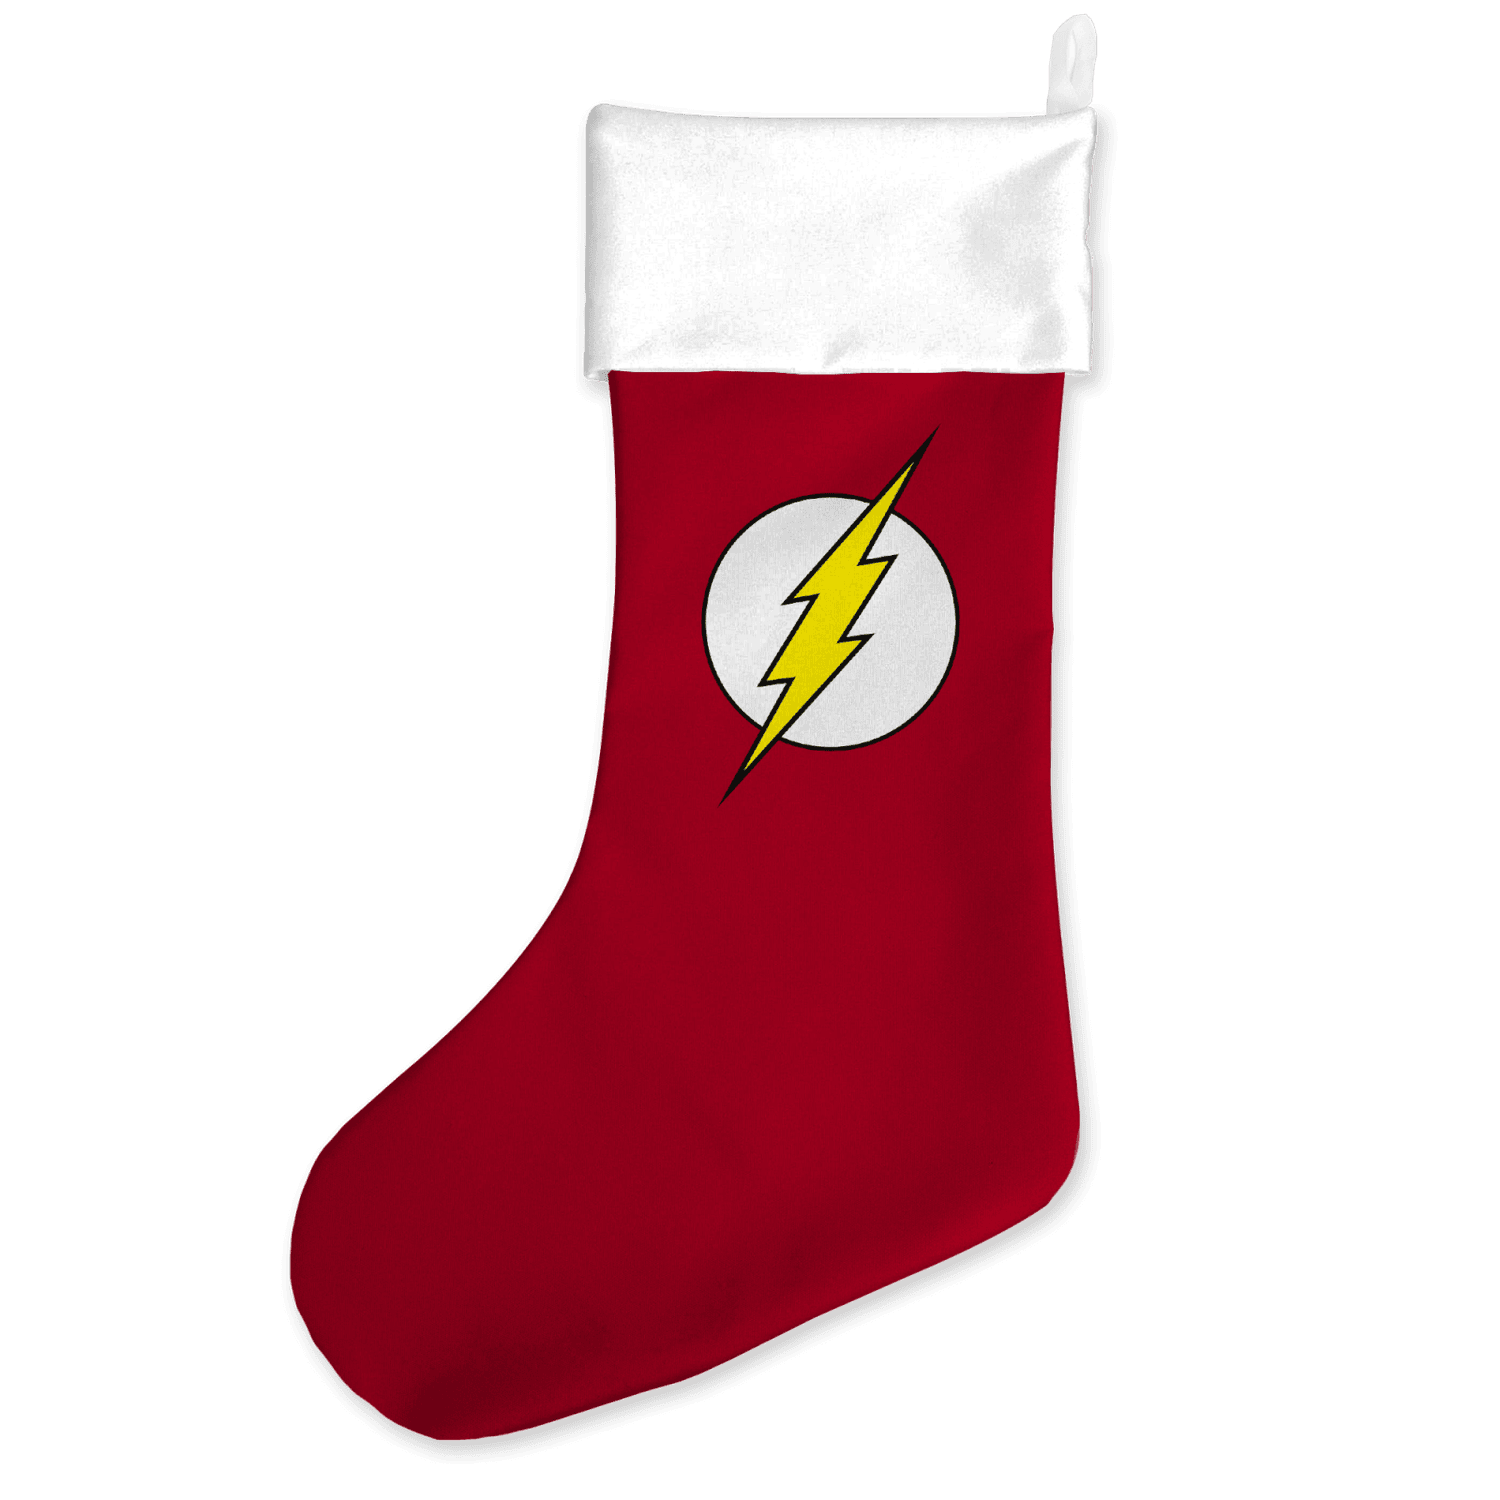 The Flash Comic Logo Christmas Stocking